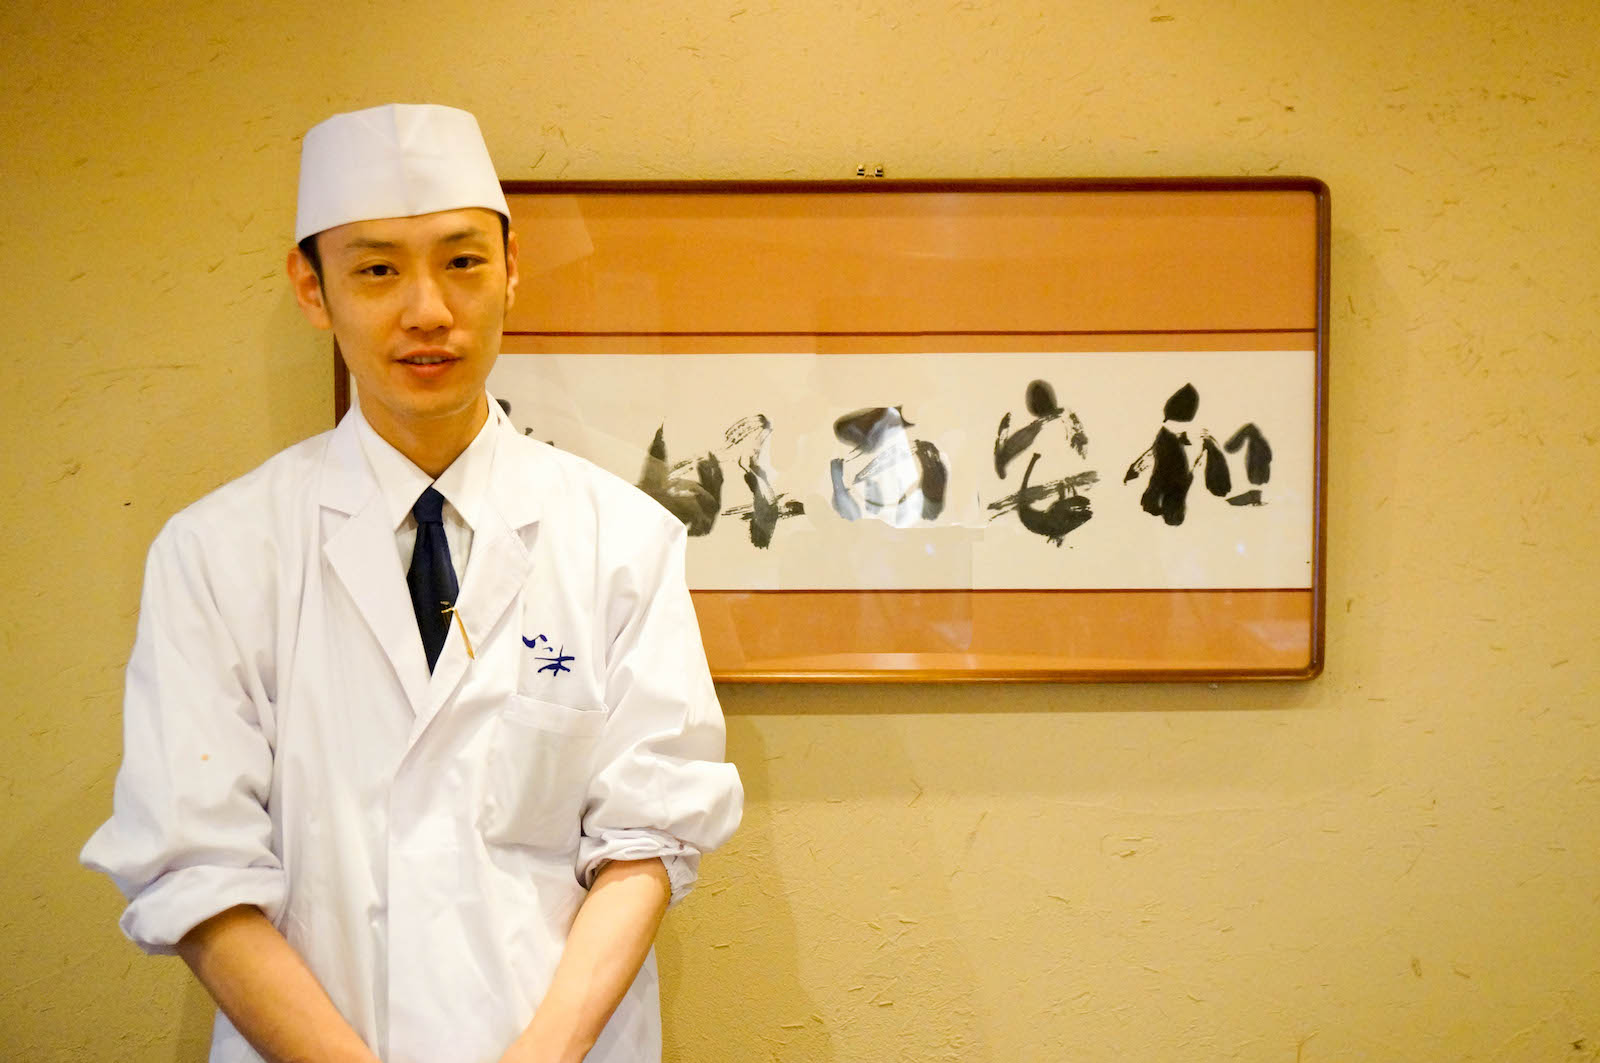 【まちなかストーリー】懐石料理 いっ木 一木敏哉さん 第２回「開業時に苦労したお話と食育・食文化について」